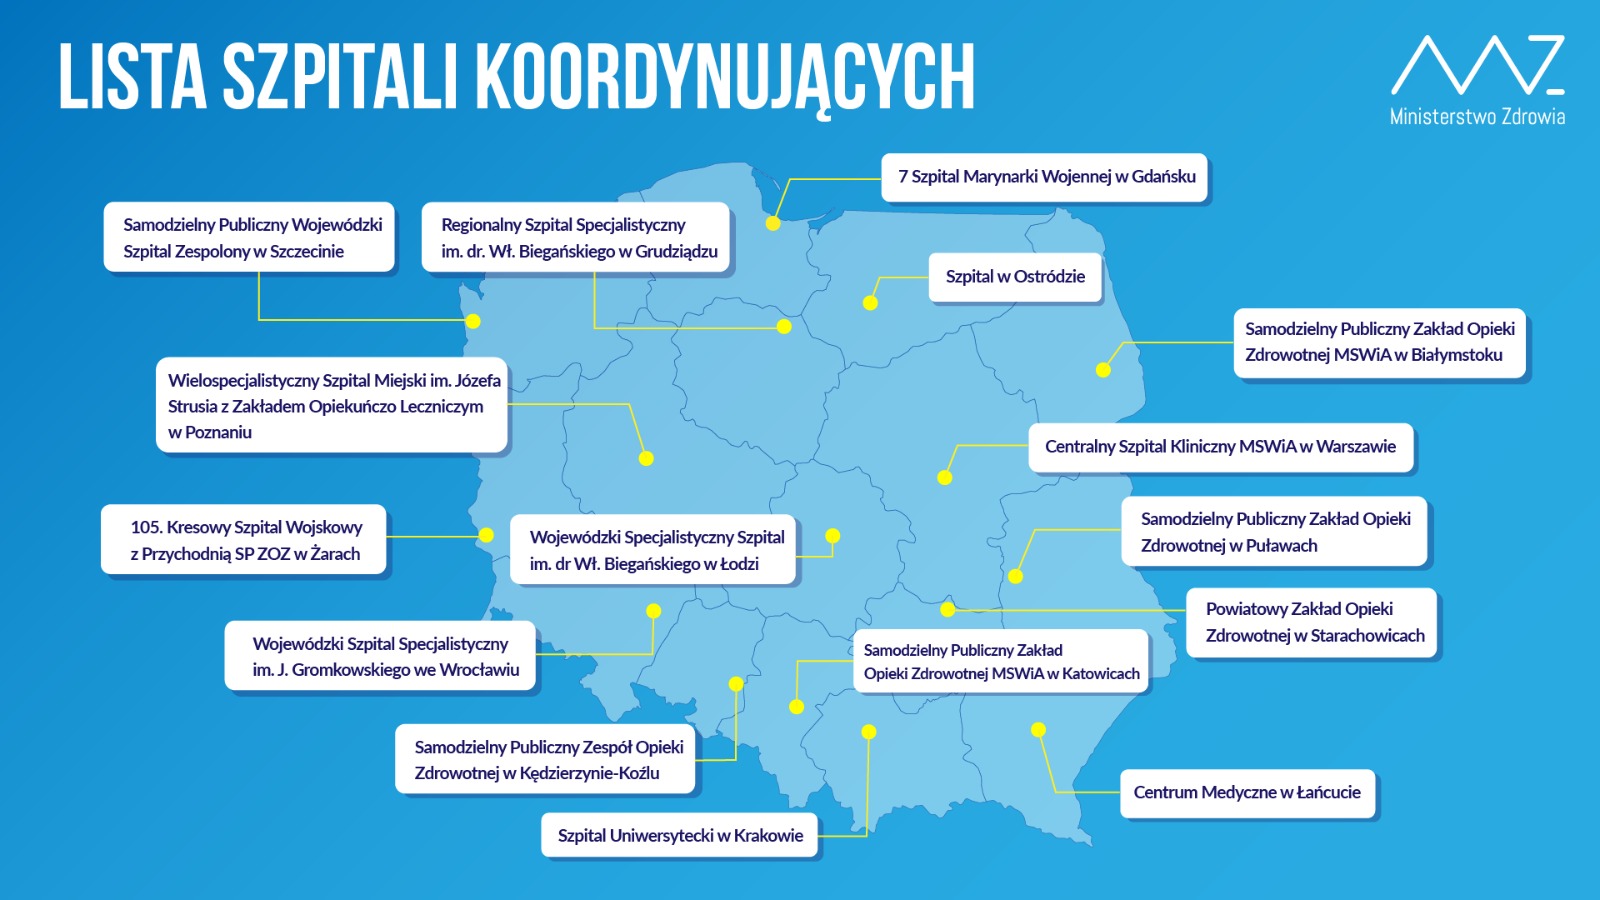 Koronawirus - szpitale koordynacyjne w Polsce